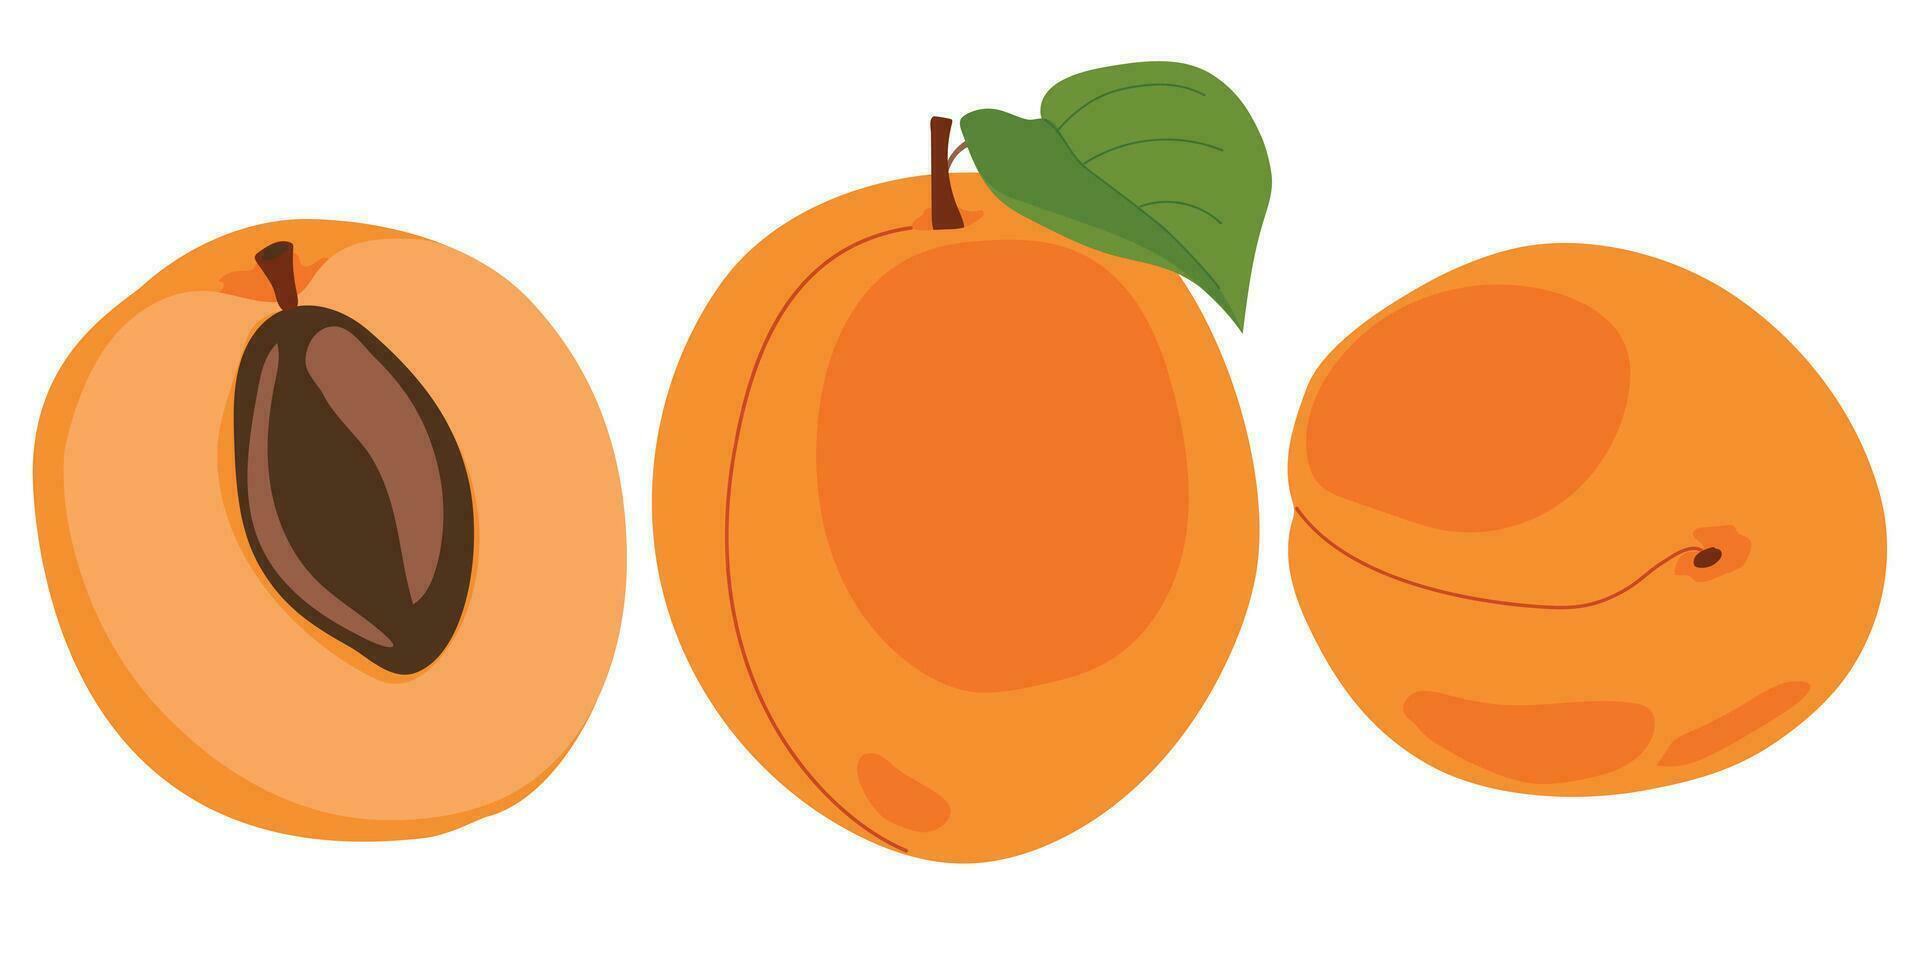 Damasco definir. vetor ilustração do delicioso frutas dentro desenho animado estilo. maduro todo fruta e fatias isolado em branco fundo. elemento para projeto, logotipo, embalagem do suco ou geléia.